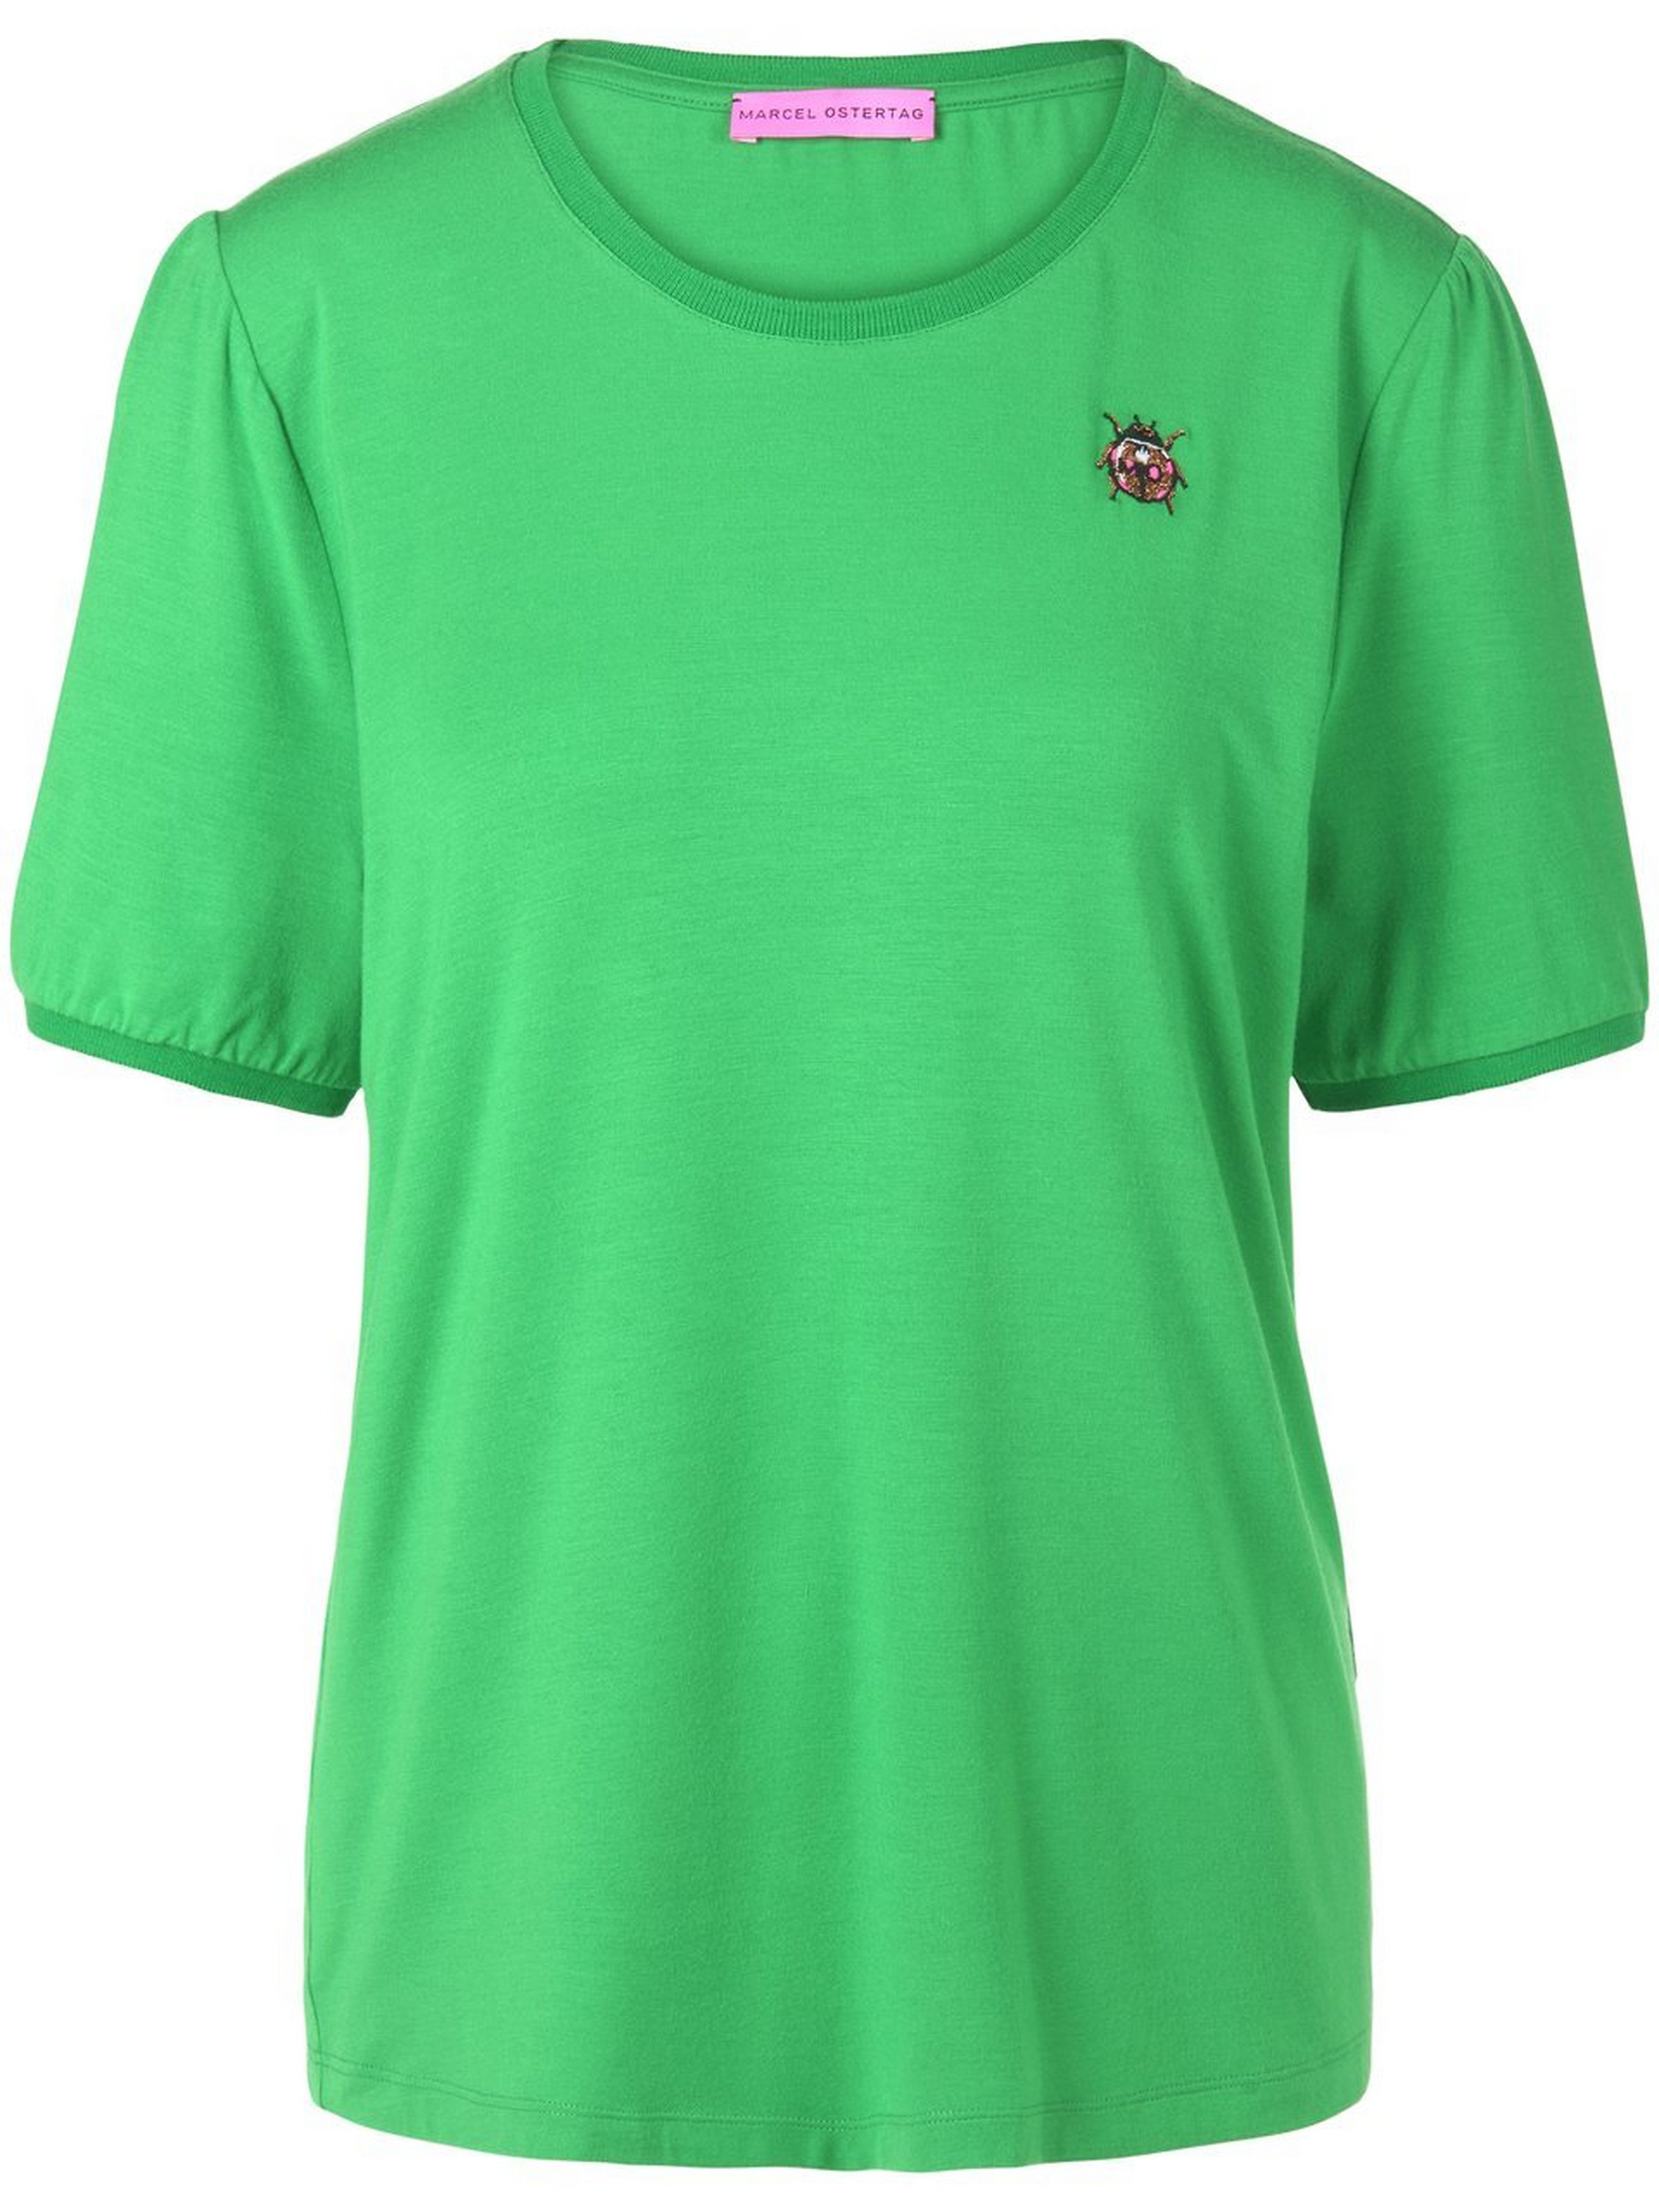 Shirt Van Marcel Ostertag groen